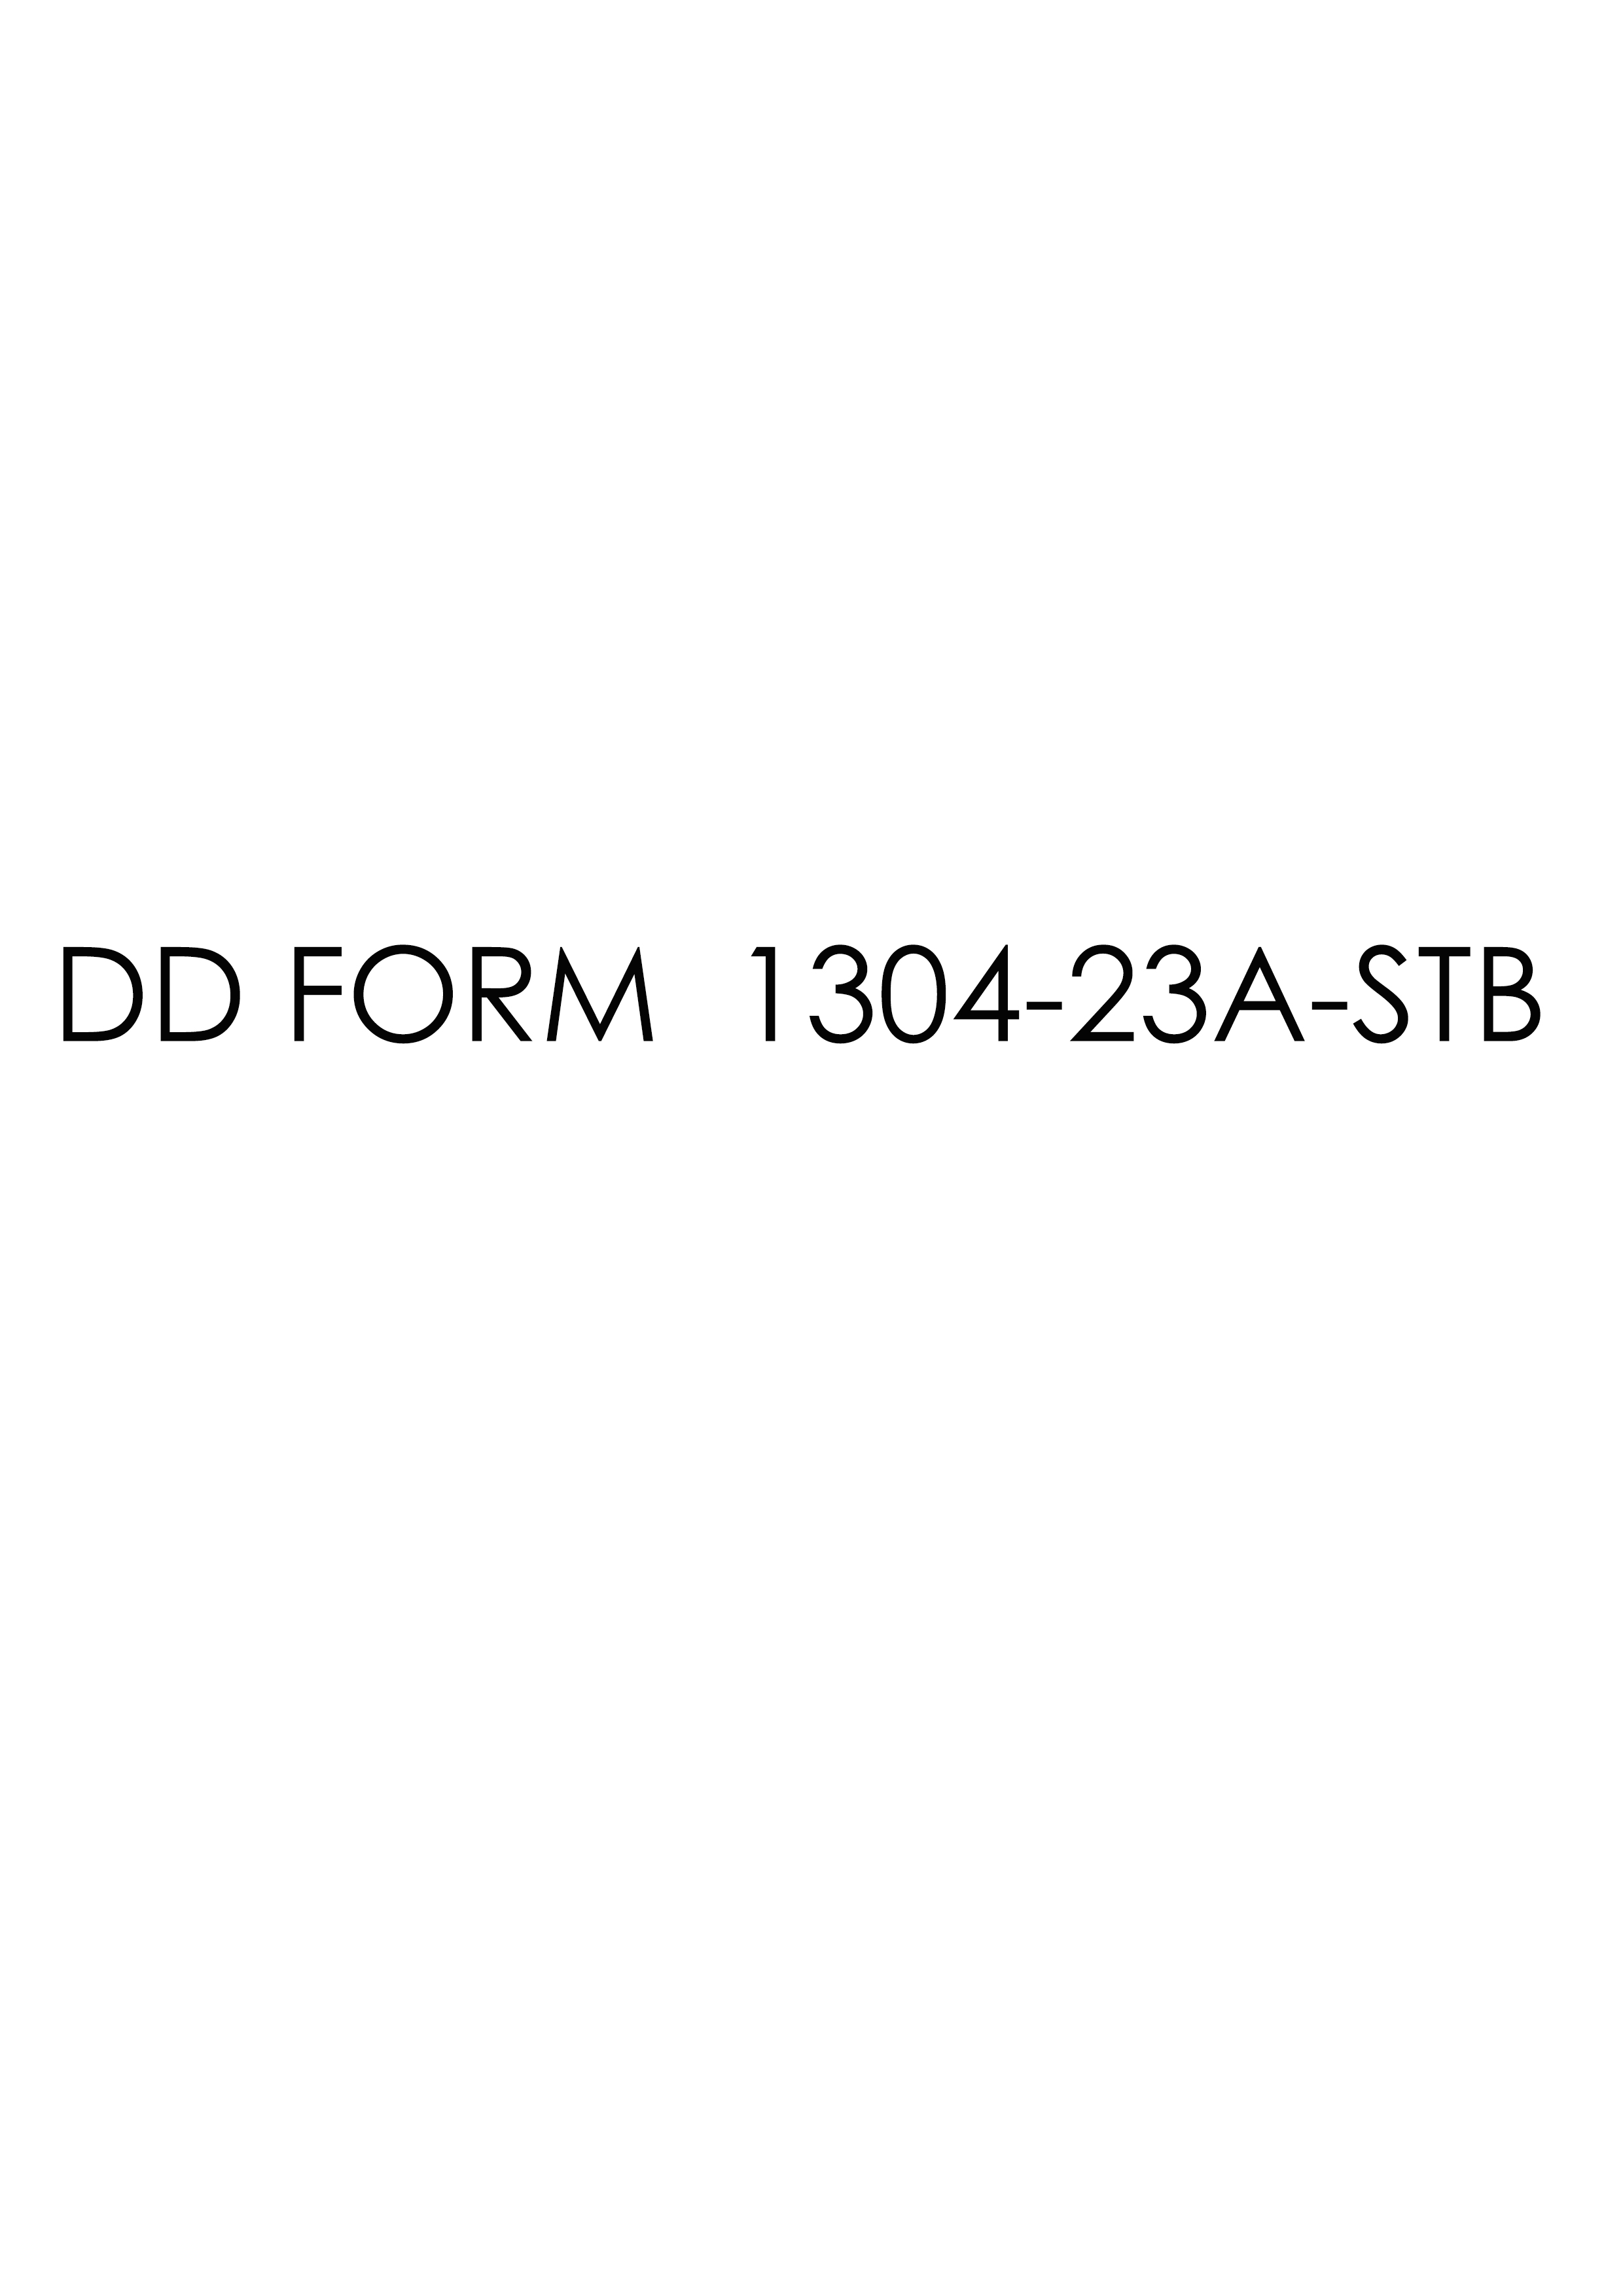 Download dd Form 1304-23A-STB